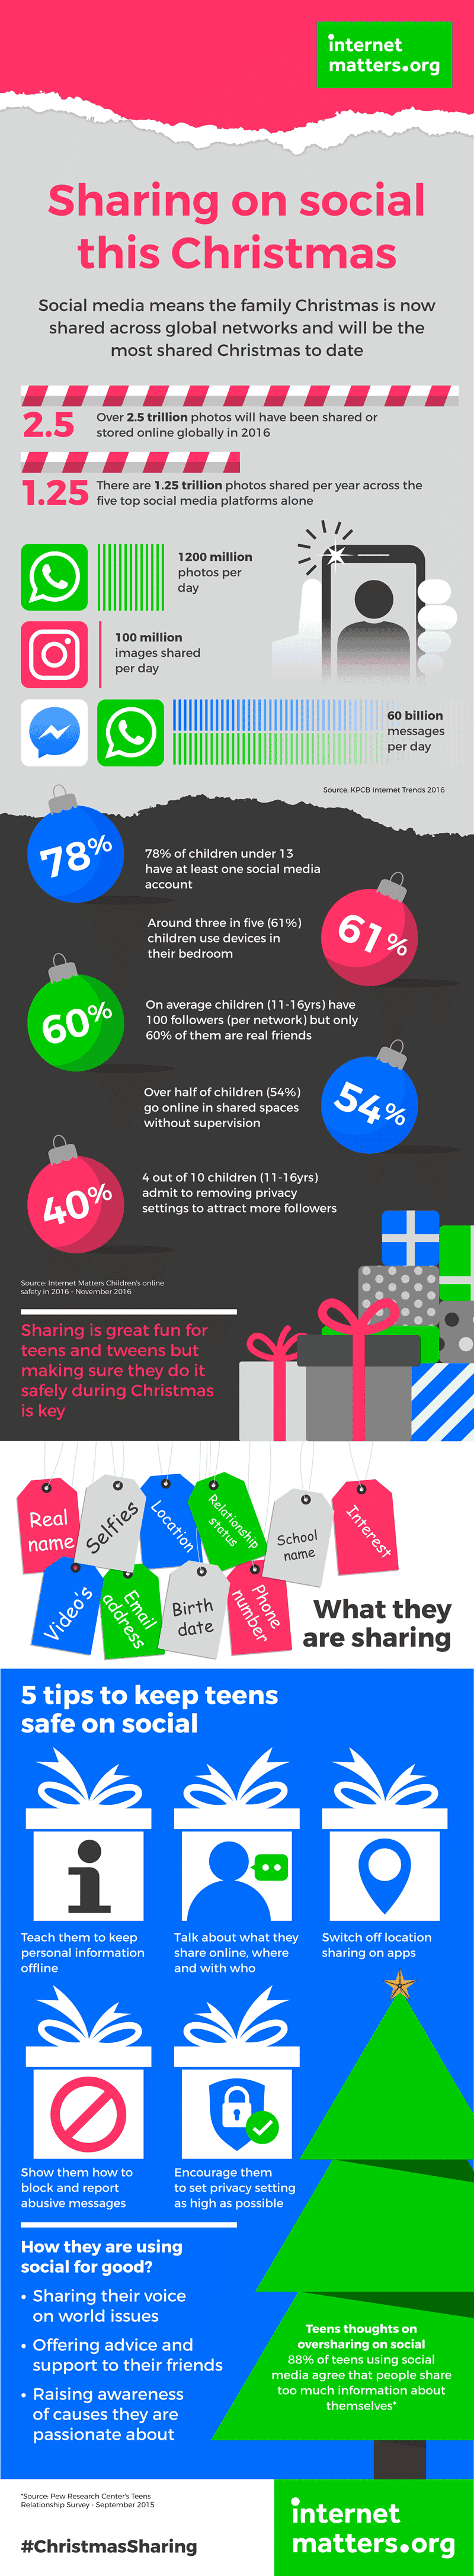 Mit diesem Weihnachtsfest, das voraussichtlich das am besten vernetzte sein wird, werden 7-Milliarden-Bilder voraussichtlich am 25. Dezember in den sozialen Medien geteilt. Weitere Statistiken zum sozialen Teilen und Tipps, wie Sie Kindern helfen können, sicher online zu teilen.